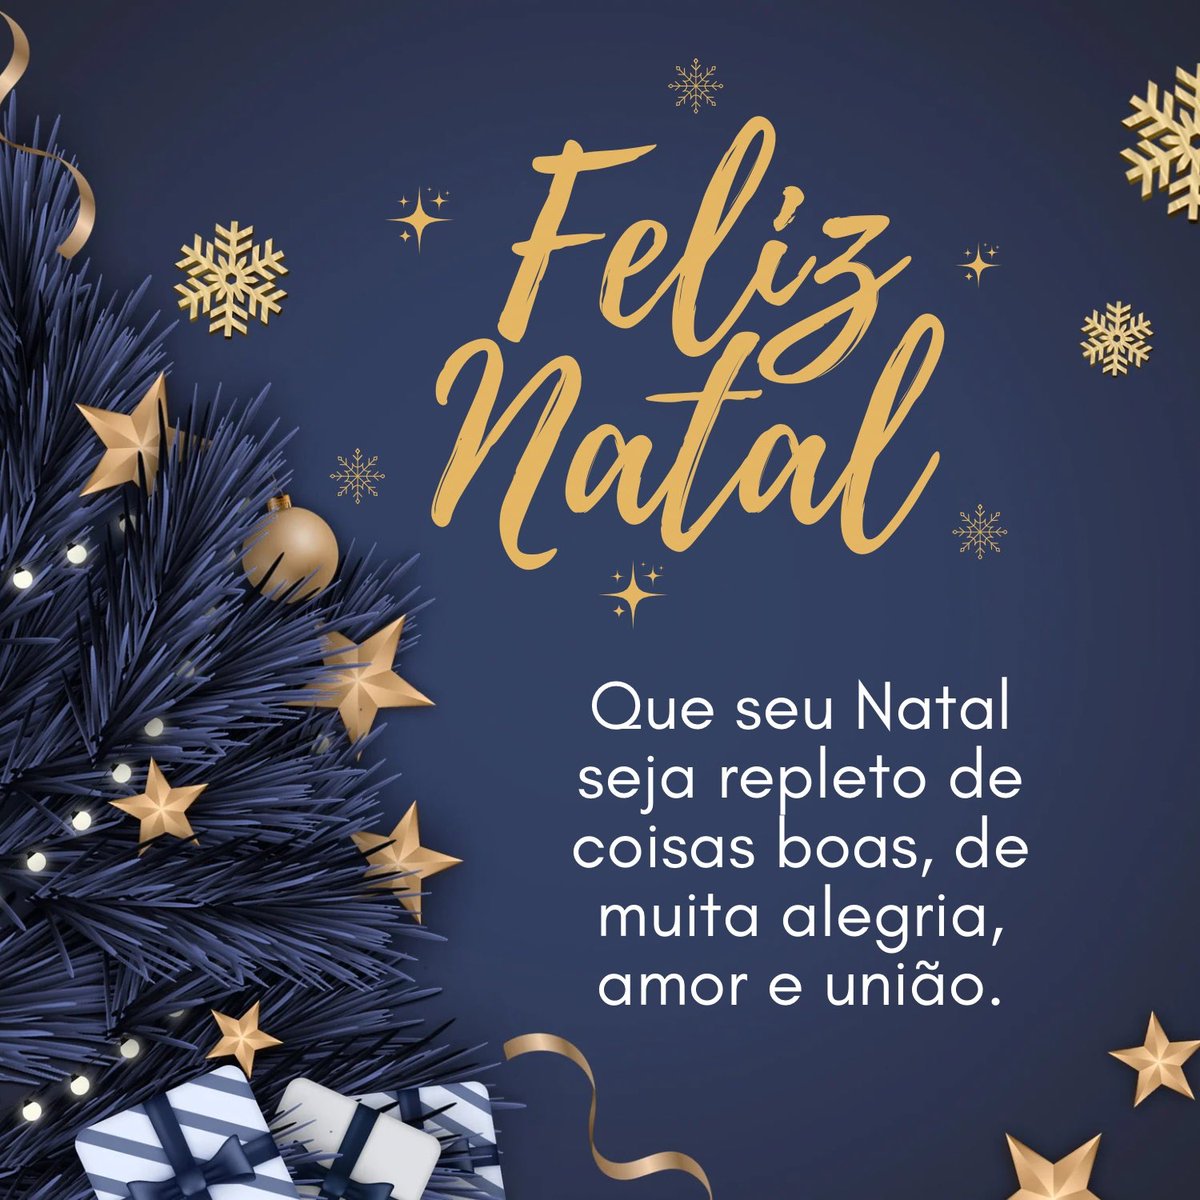 Um Natal de muita paz e luz a todo o povo brasileiro. Que as bençãos de Deus inundem seus lares e tragam paz, harmonia e muita perseverança. #FelizNatal 🙏🏻